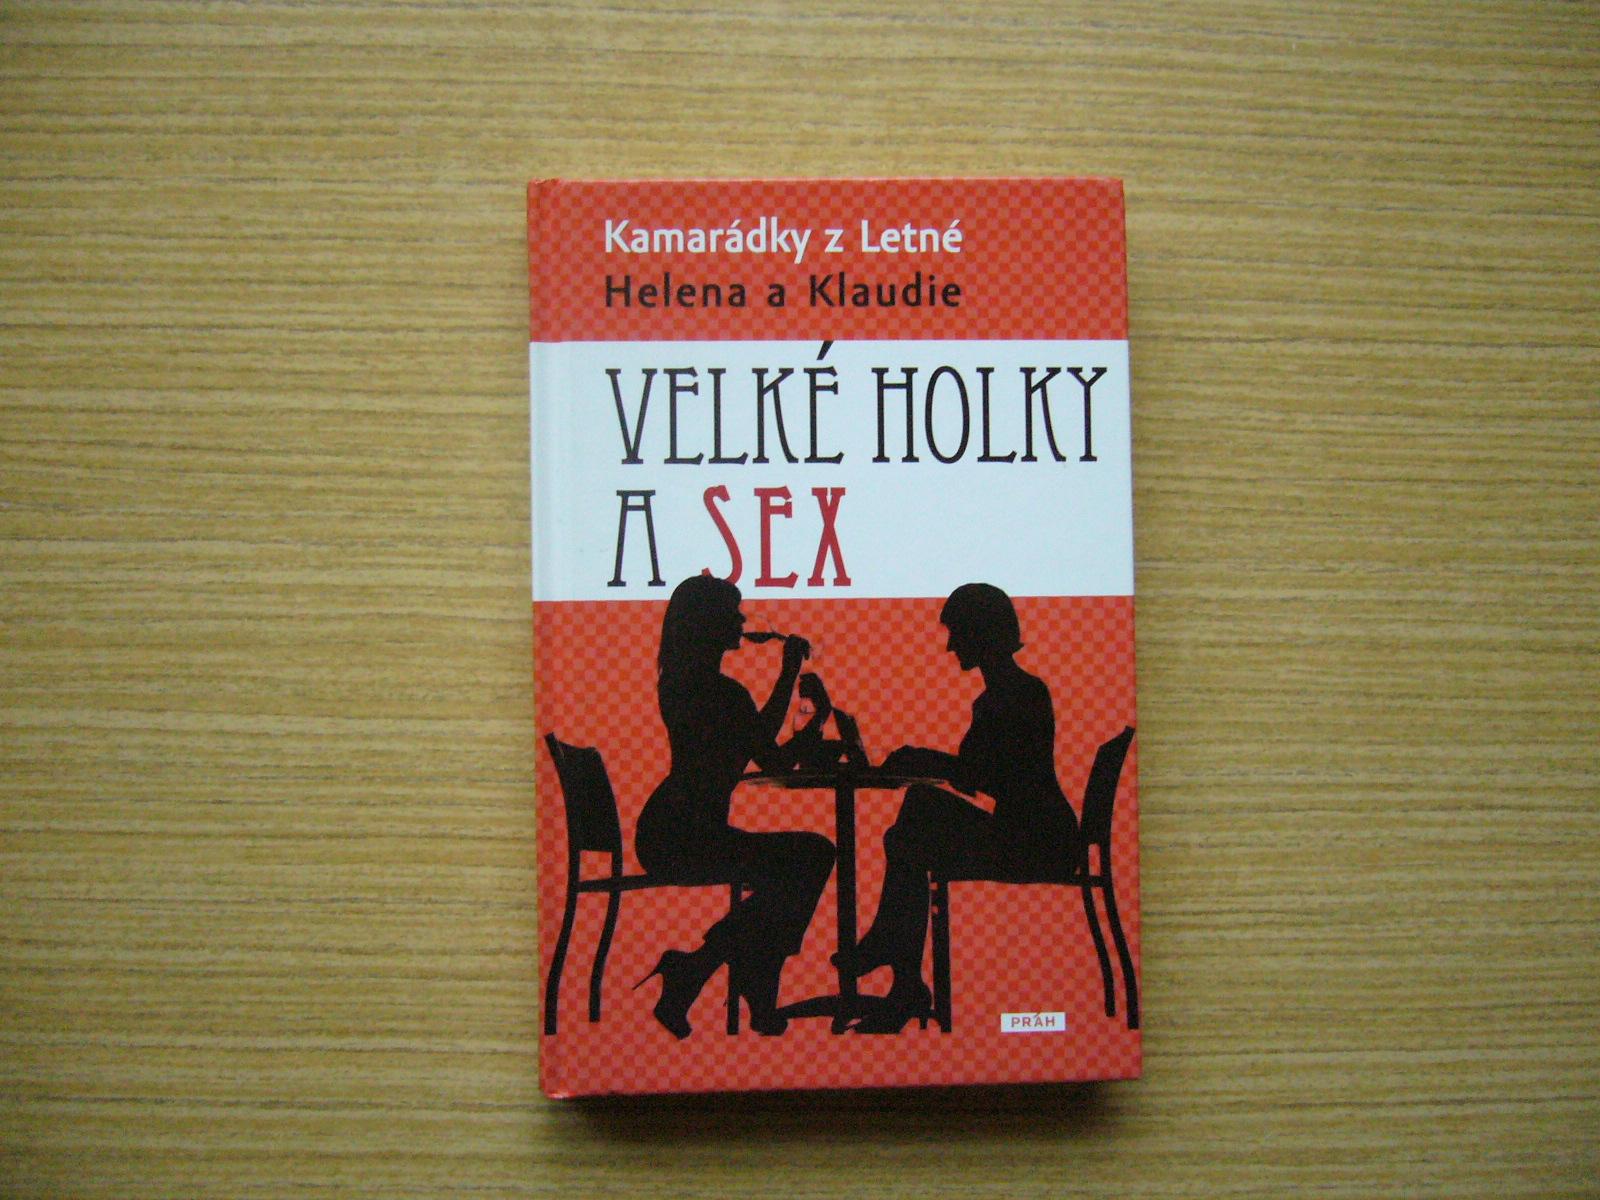 Kamarátky z Letnej (Helena a Klaudia) - Veľké dievčatá a sex | 2011 - Knihy